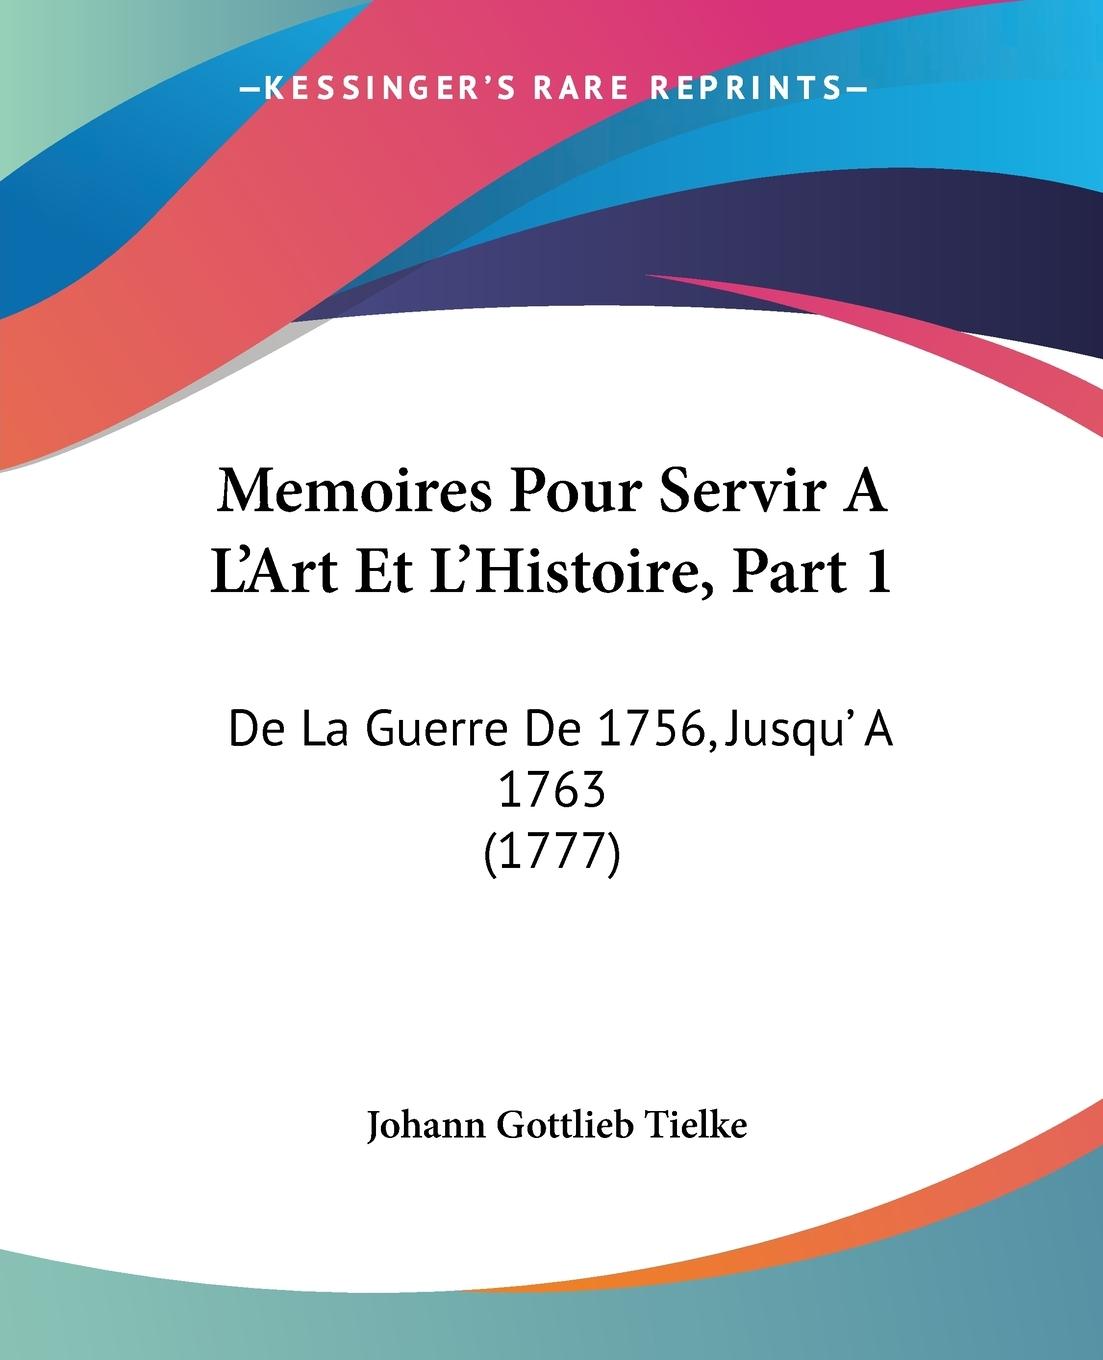 Memoires Pour Servir A L Art Et L Histoire, Part 1 - Tielke, Johann Gottlieb